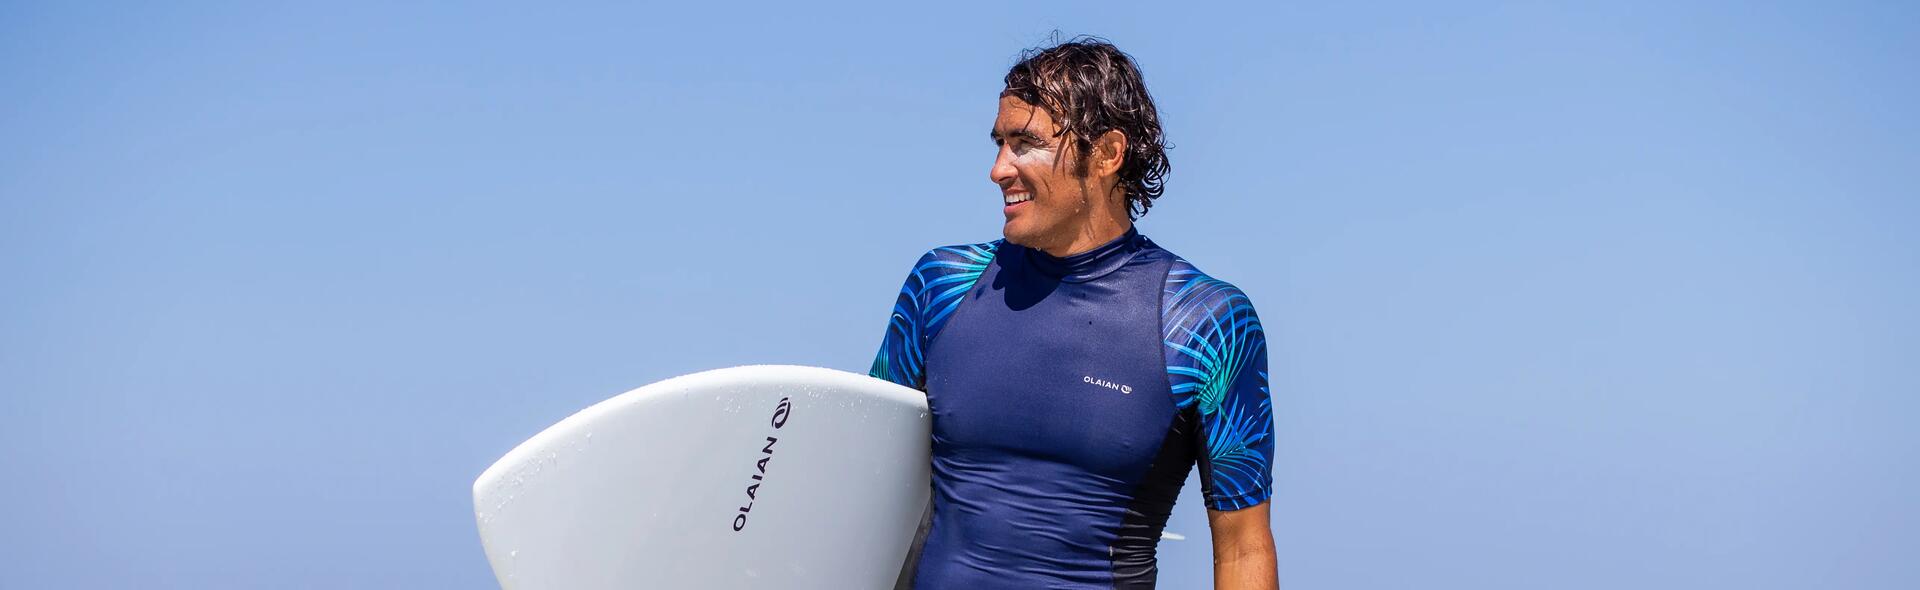 Protection UV pendant la séance de surf 